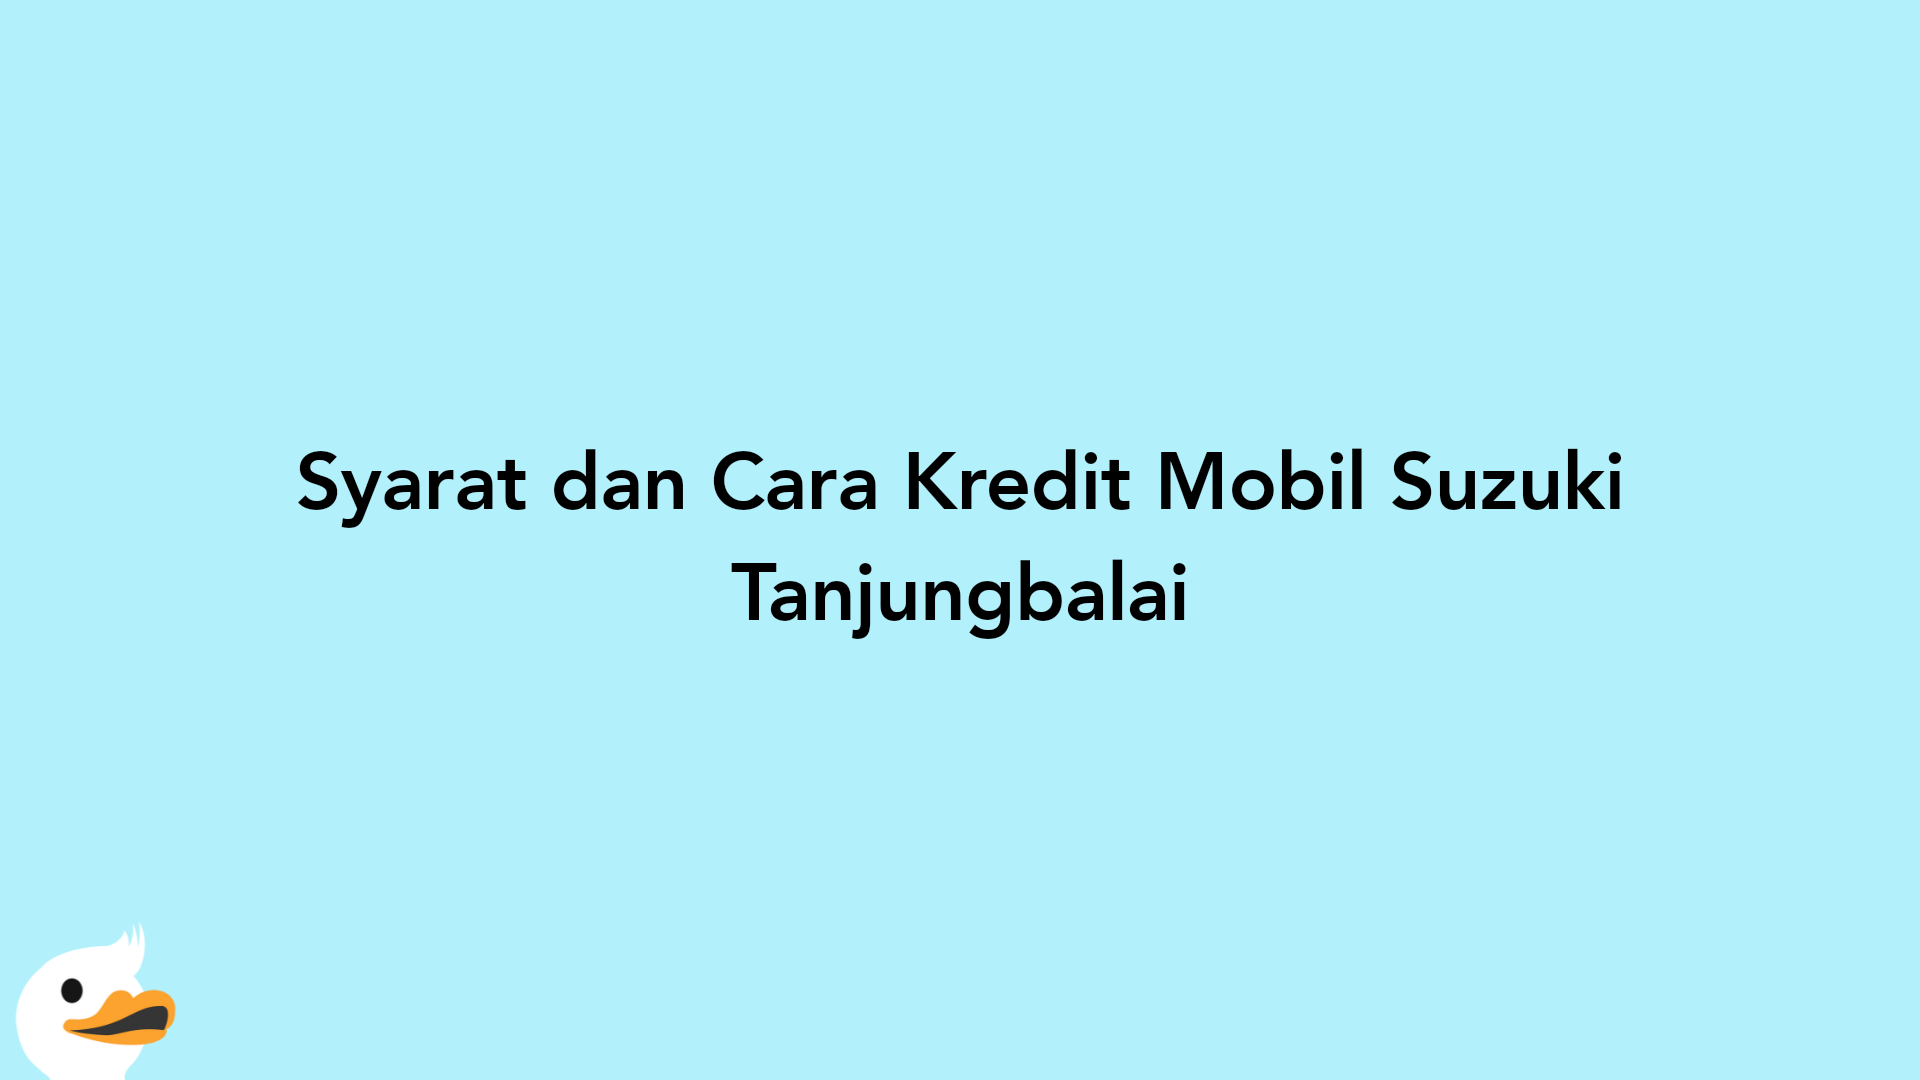 Syarat dan Cara Kredit Mobil Suzuki Tanjungbalai